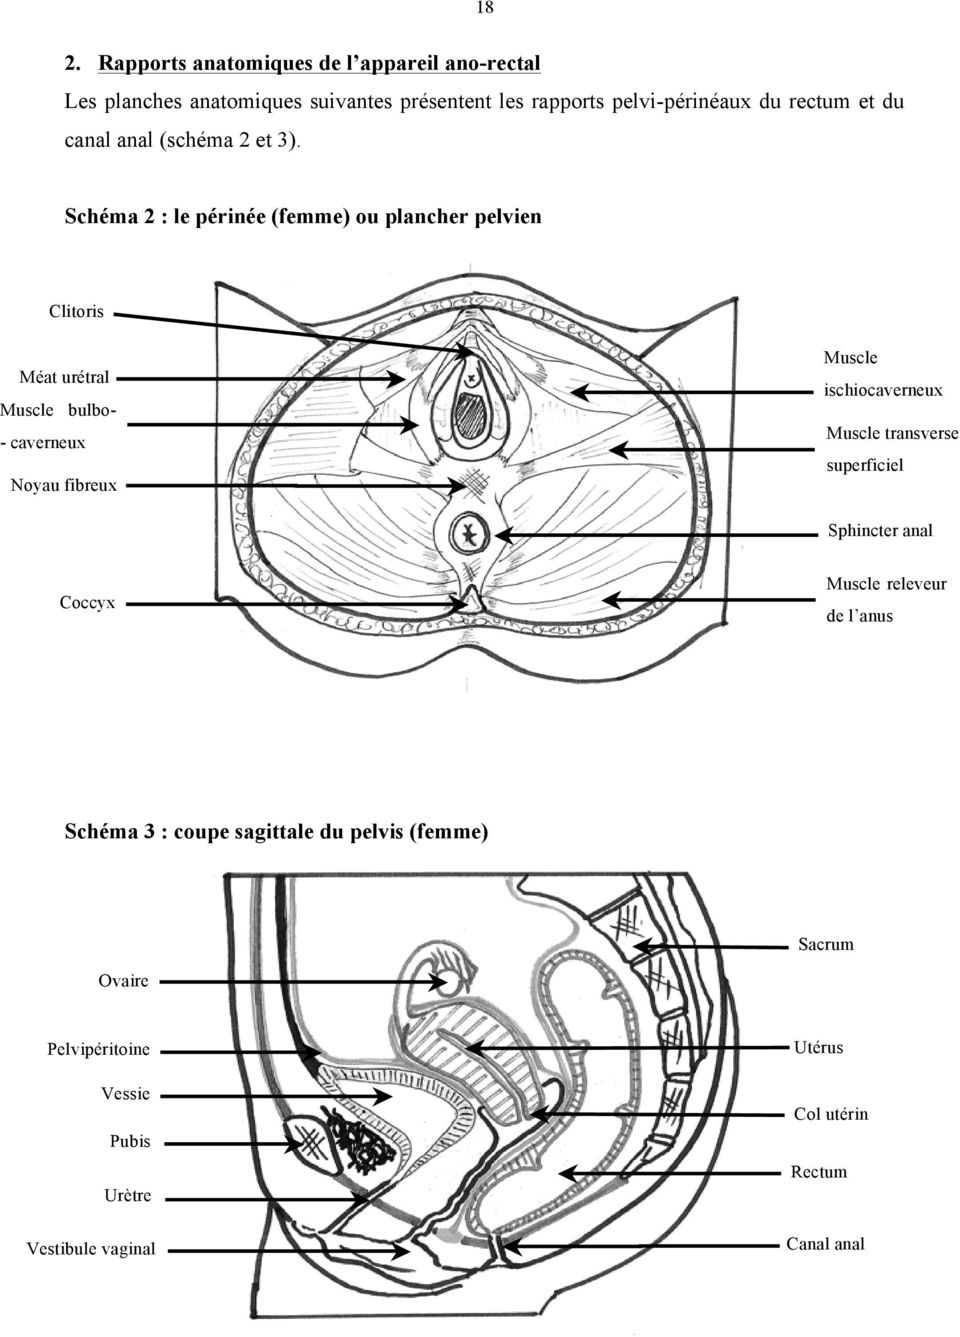 Rapports X : le périnée anatomiques (femme) de ou l appareil plancher ano-rectal pelvien Schéma 2 : le périnée (femme) ou plancher pelvien Schéma X : le périnée (femme) ou plancher pelvien Clitoris